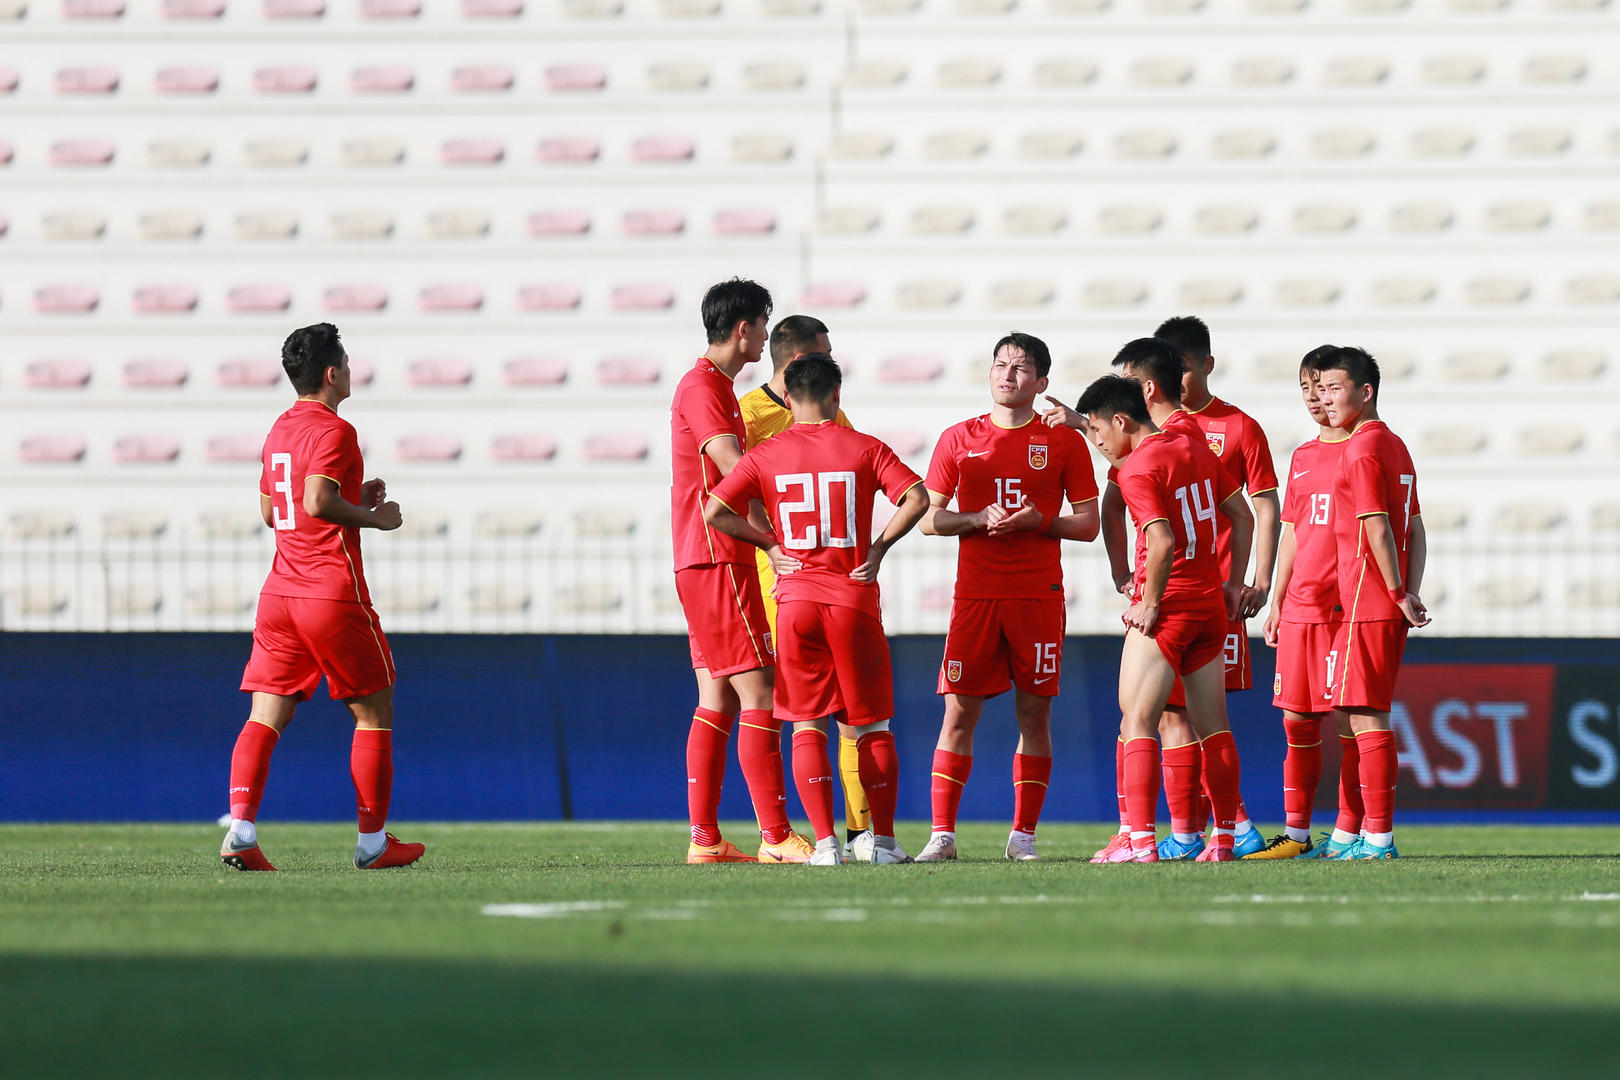 Saudi's future shines for historic U23 triumph - The Asian Game